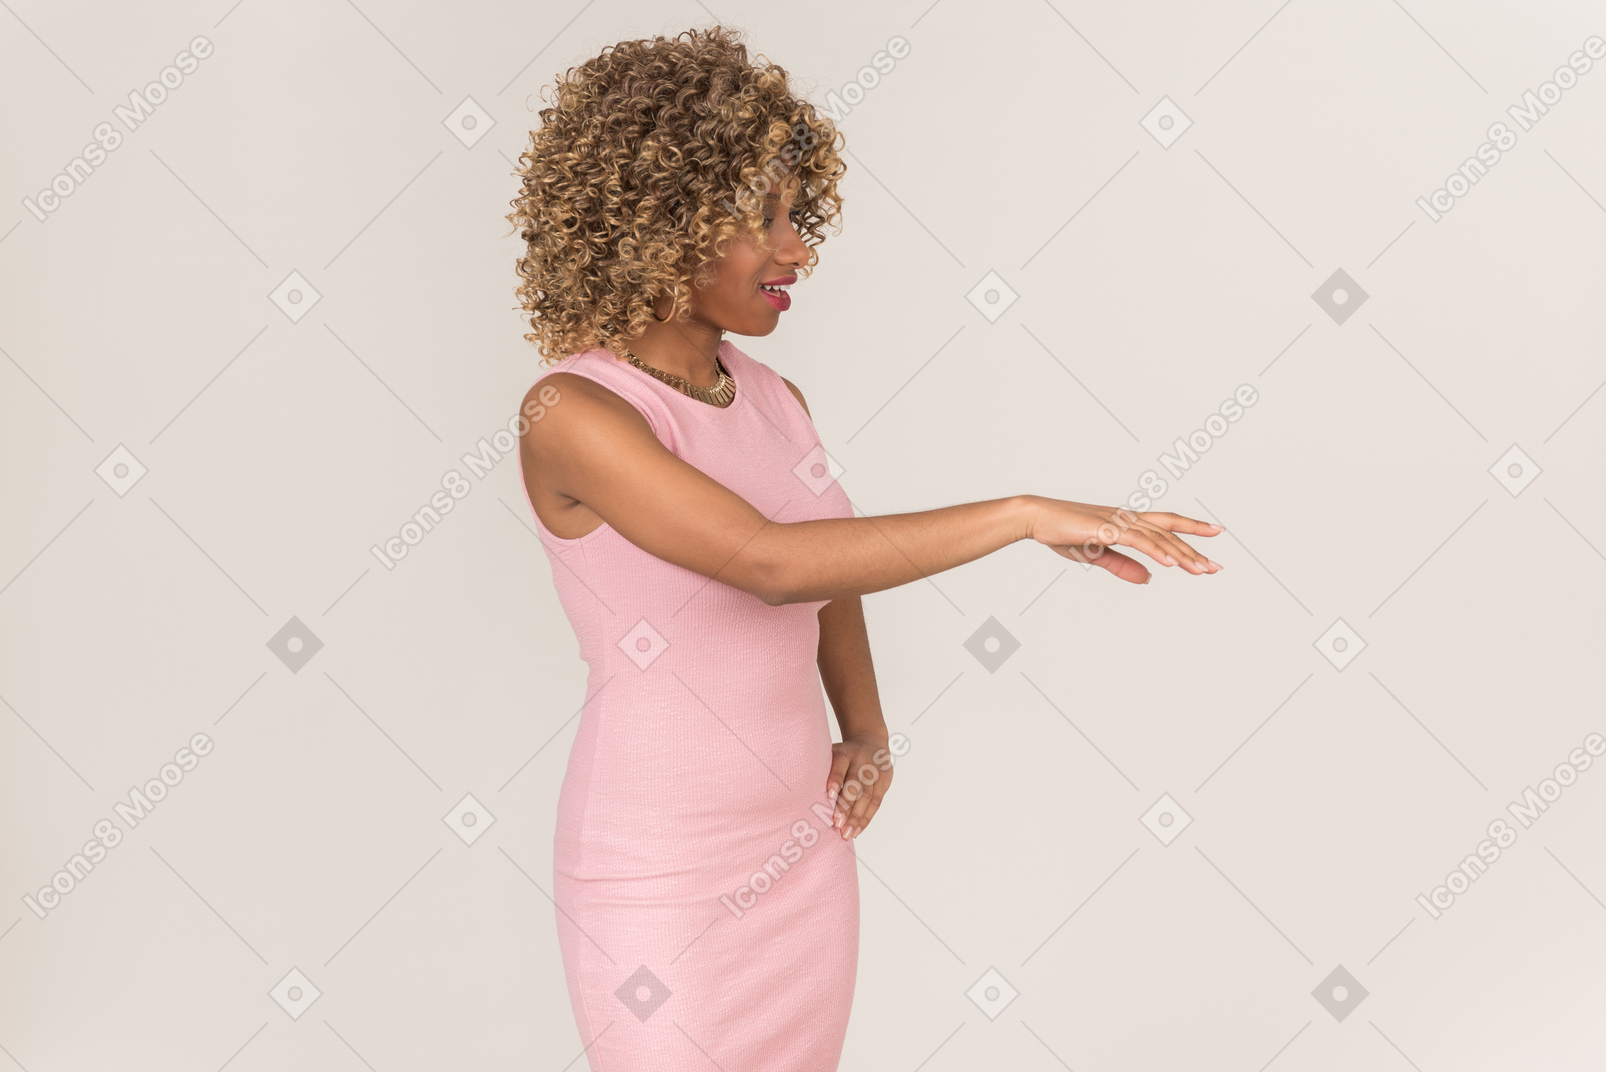 핑크 드레스를 입고 팔을 들고 있는 여자